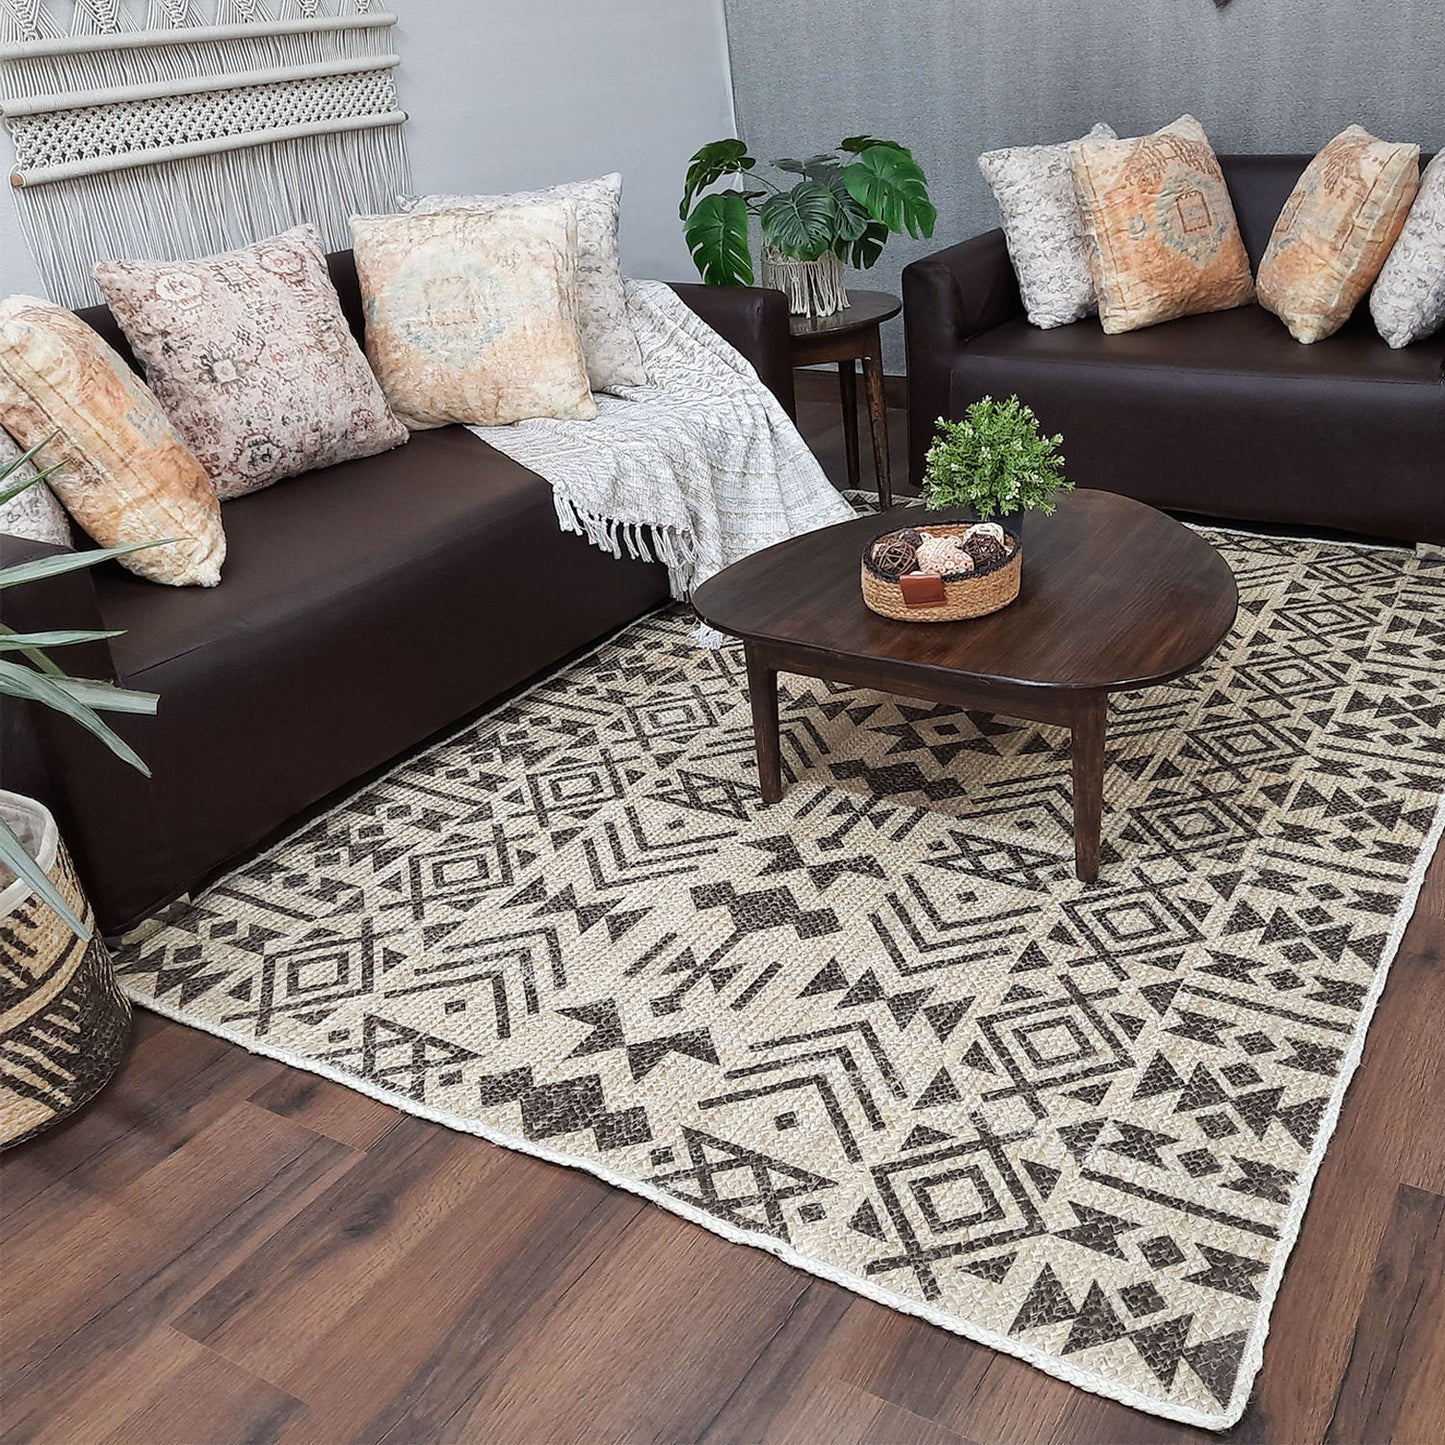 Avioni Home Kilim-Inspired Jute Carpet for Living Room